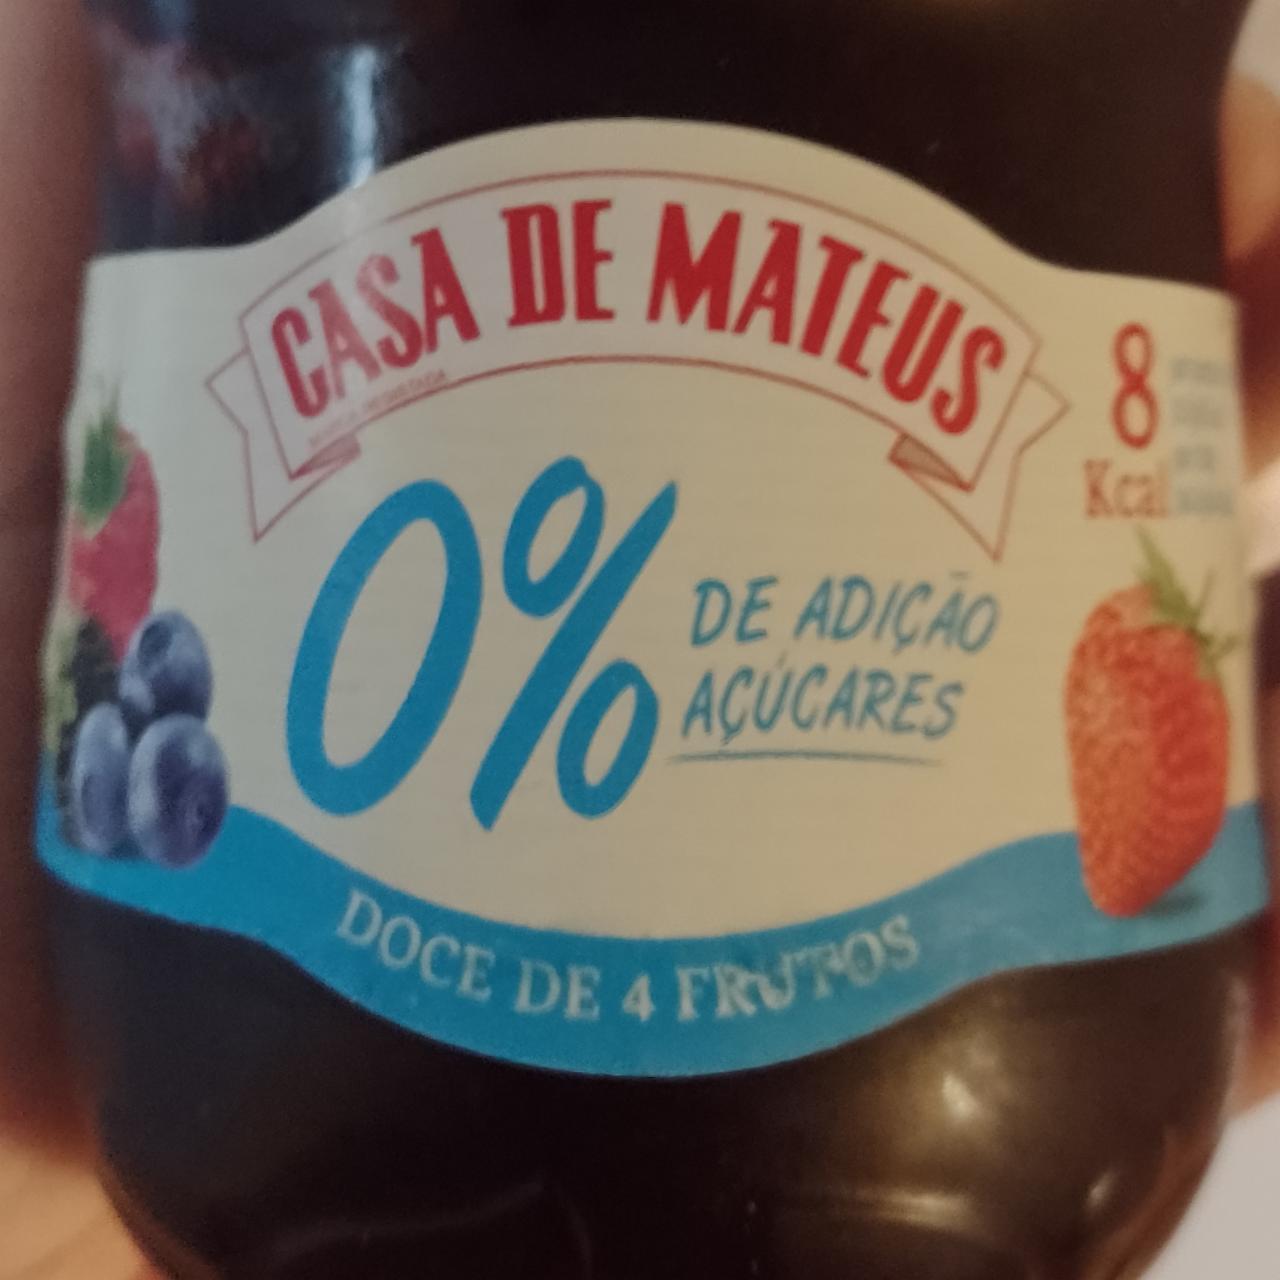 Fotografie - 0% De adicao acúcares Casa de Mateus